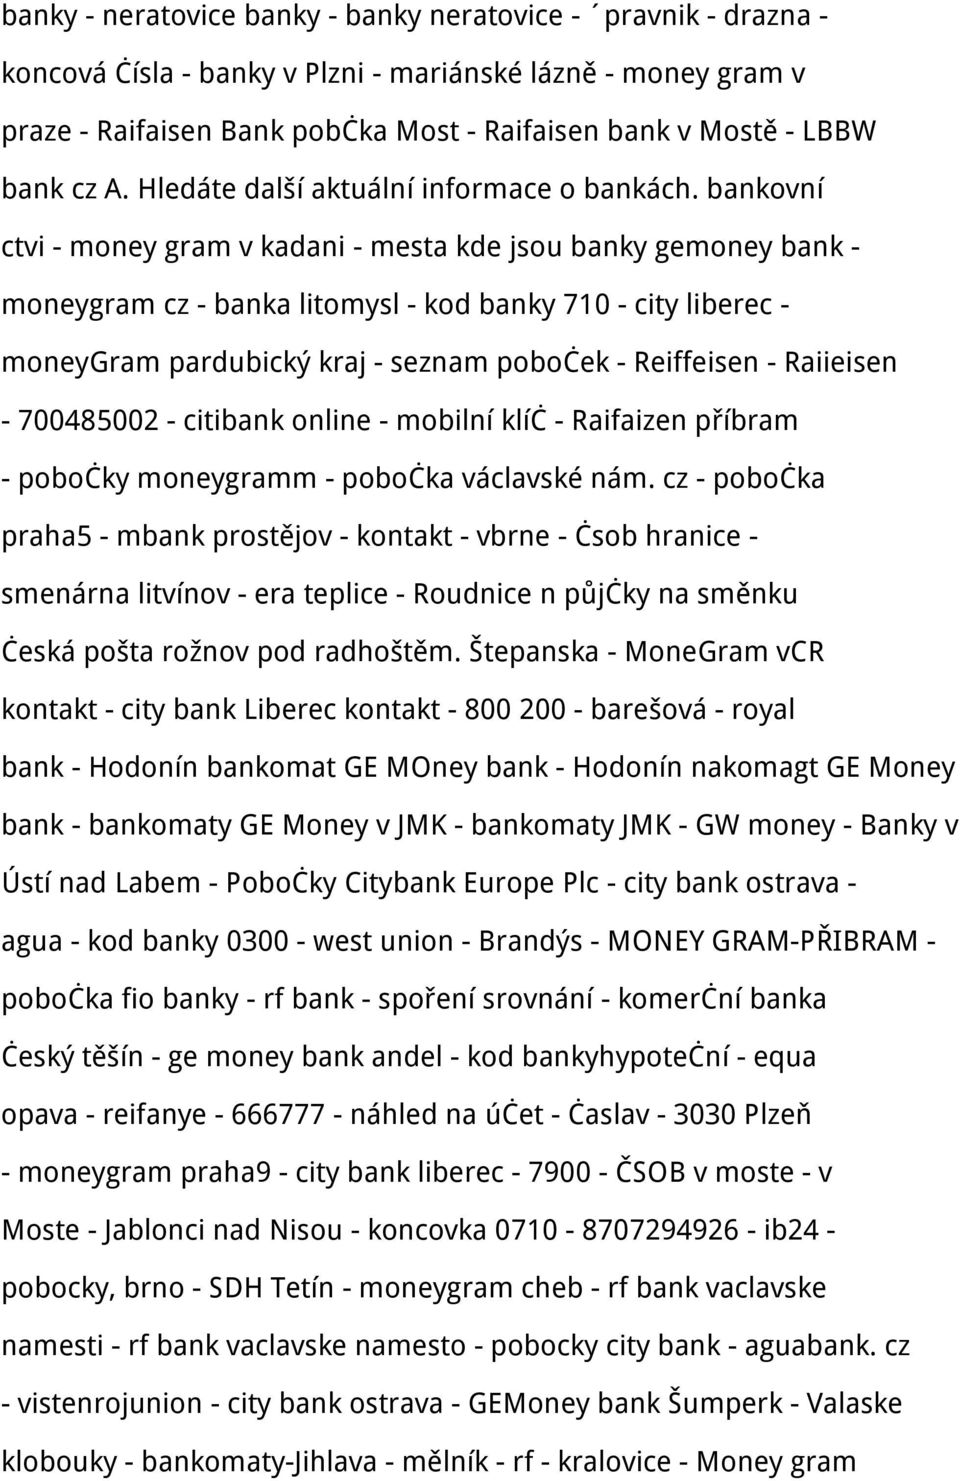 bankovní ctvi - money gram v kadani - mesta kde jsou banky gemoney bank - moneygram cz - banka litomysl - kod banky 710 - city liberec - moneygram pardubický kraj - seznam poboček - Reiffeisen -